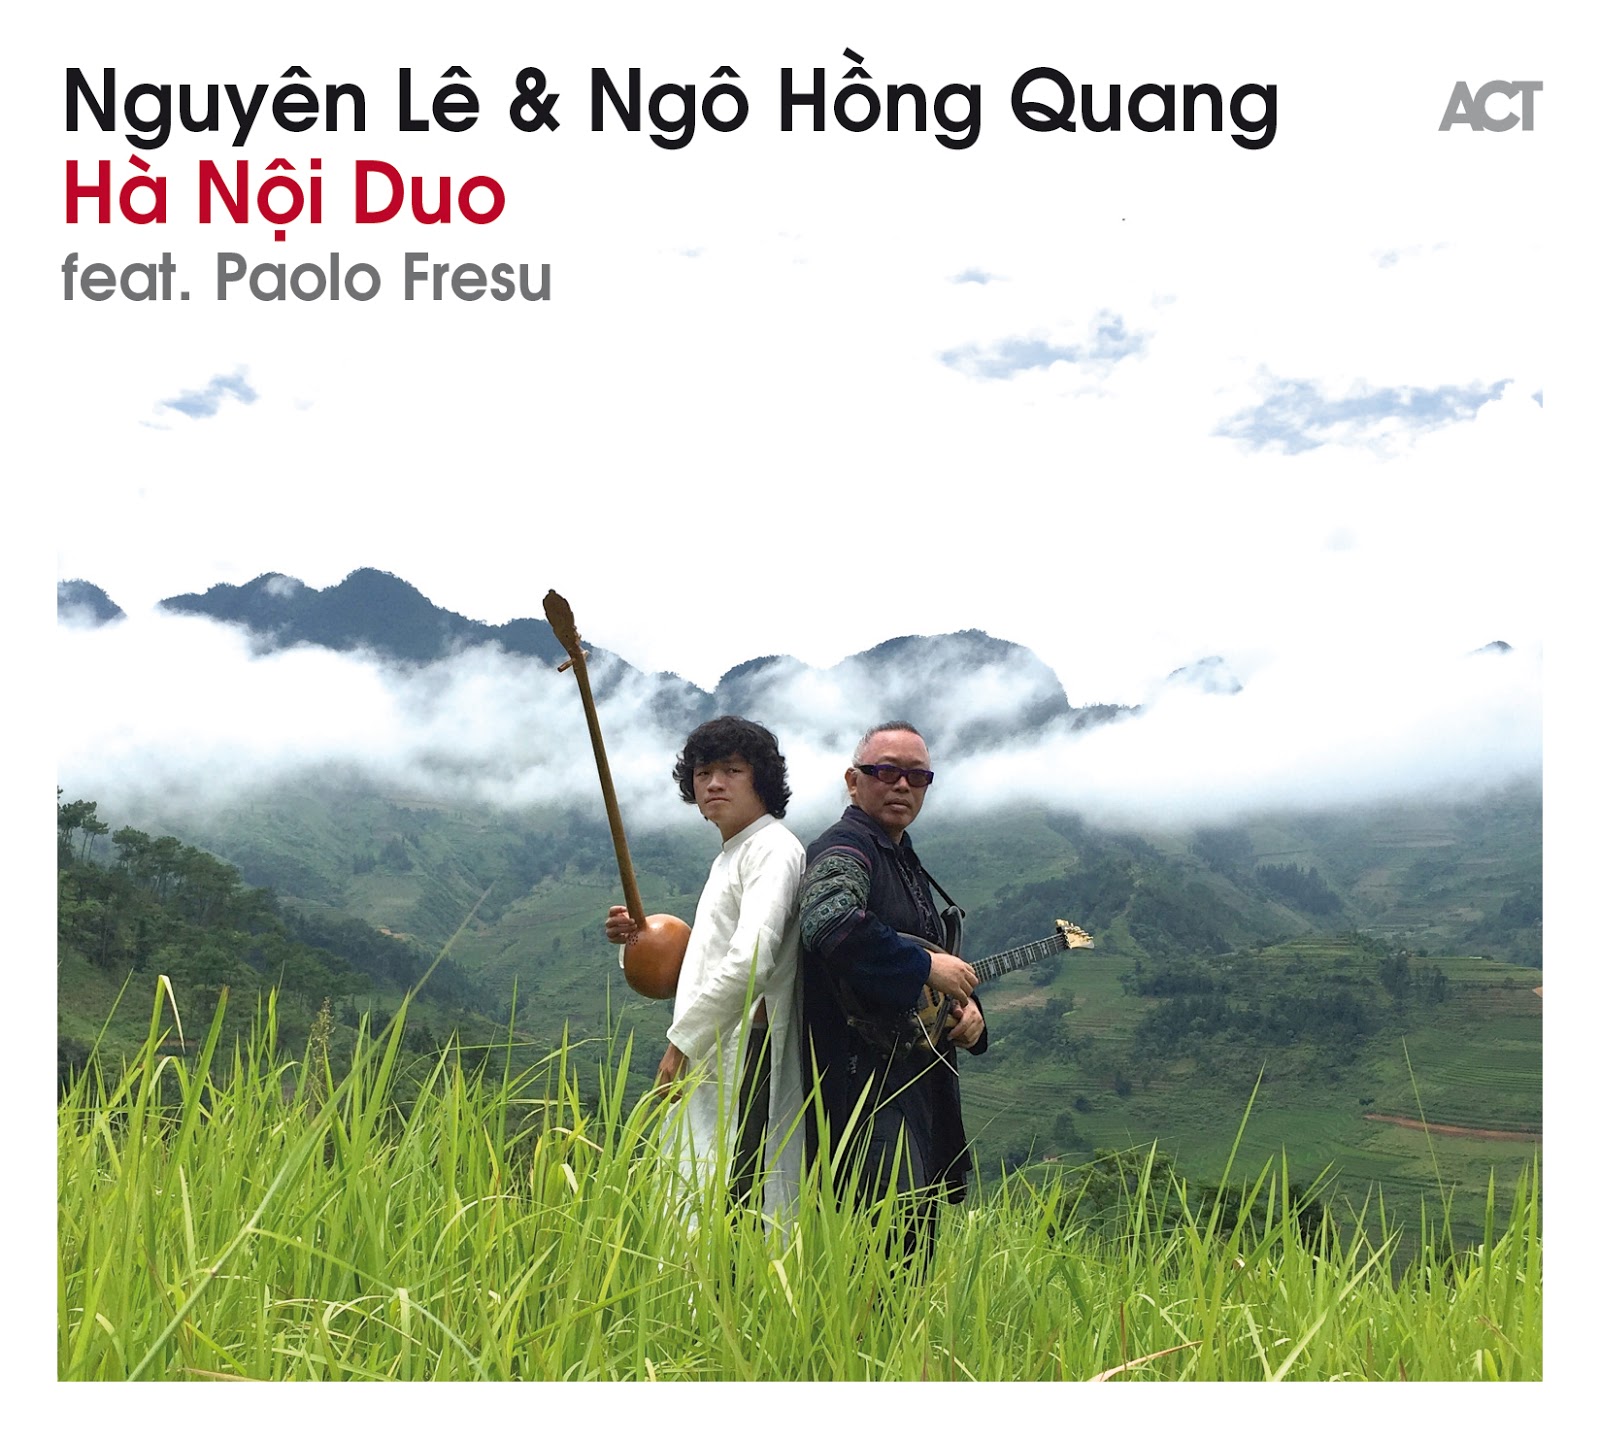 Nguyên Lê & Ngô Hong Quang - Ha Noi Duo